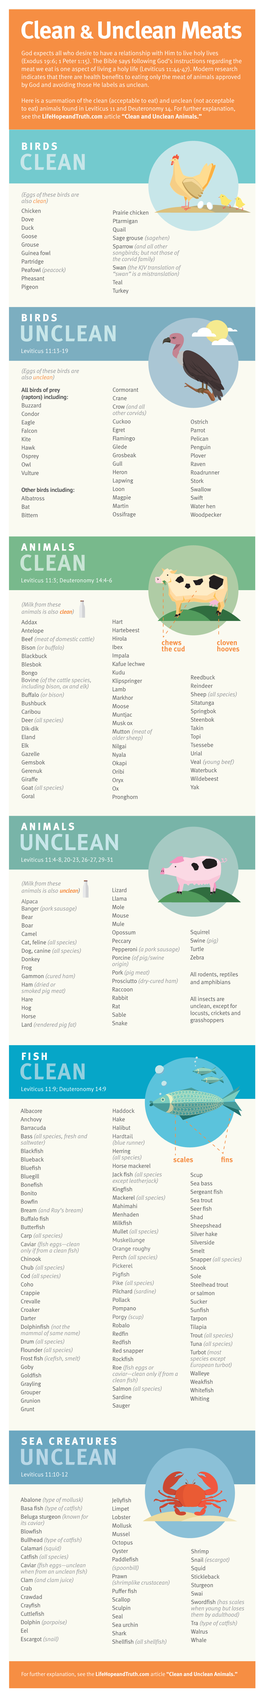 Clean &Unclean Meats